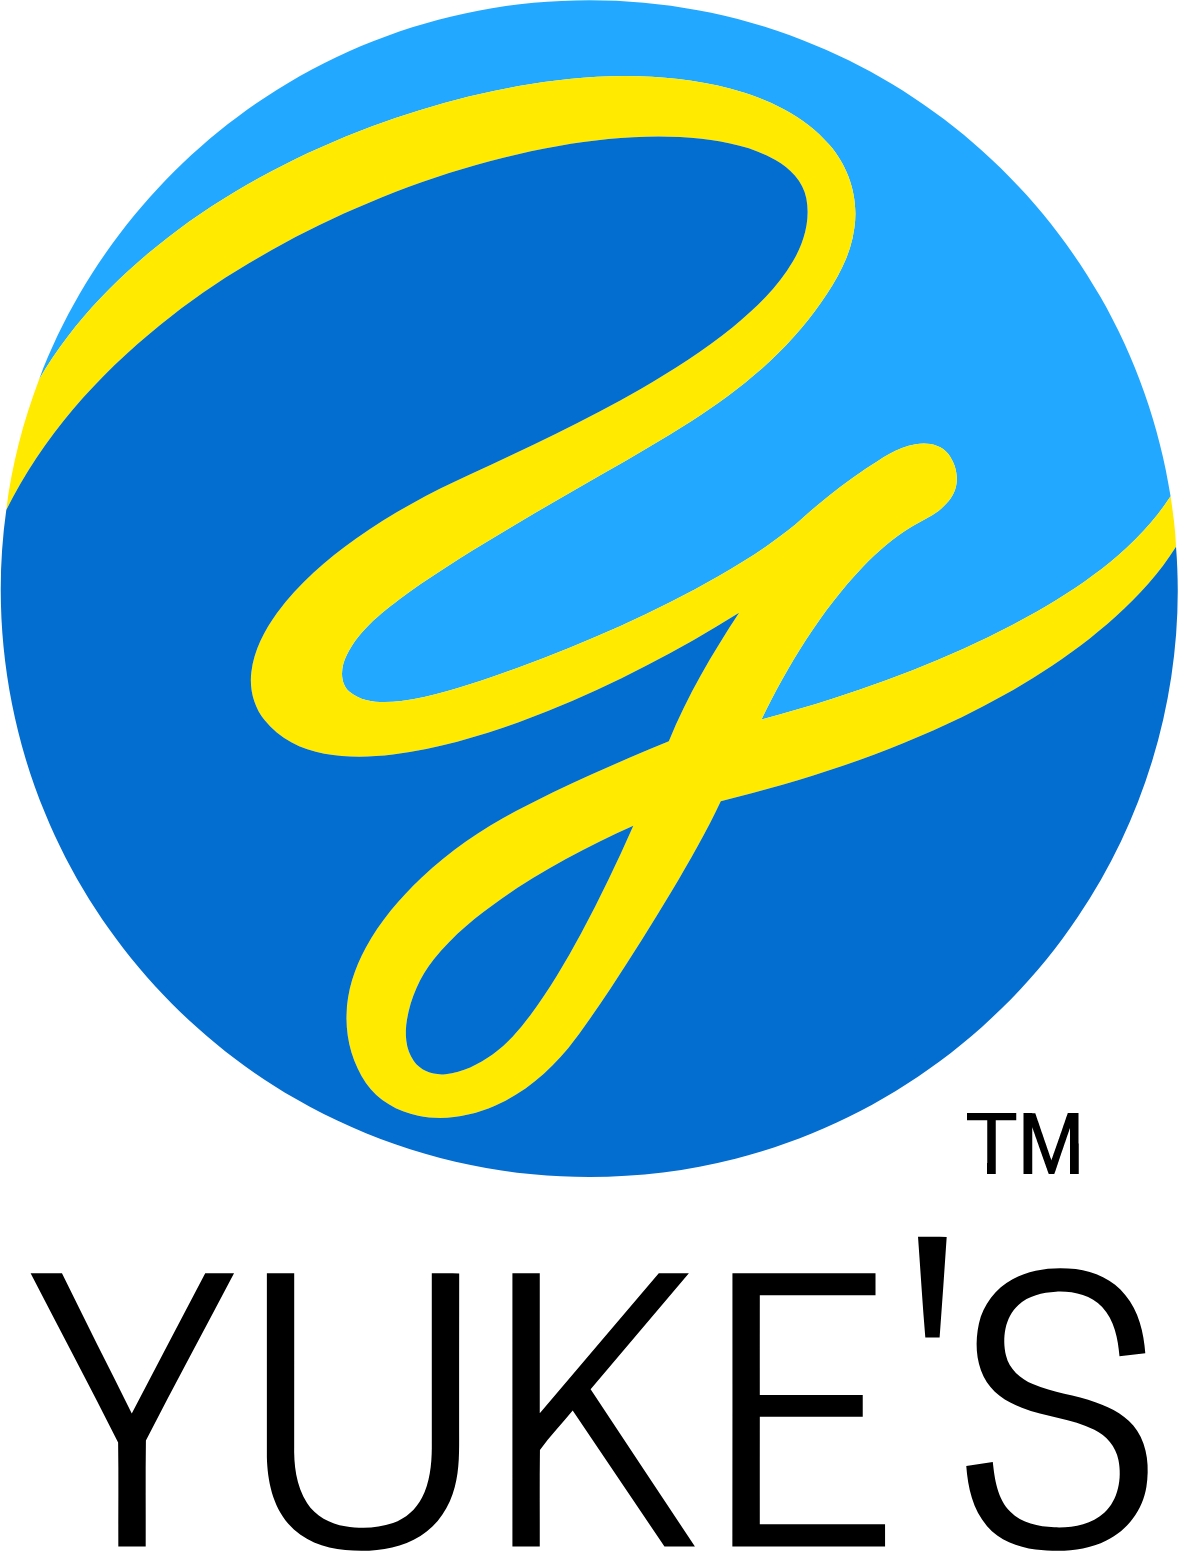 Yuke's logo large (transparent PNG)